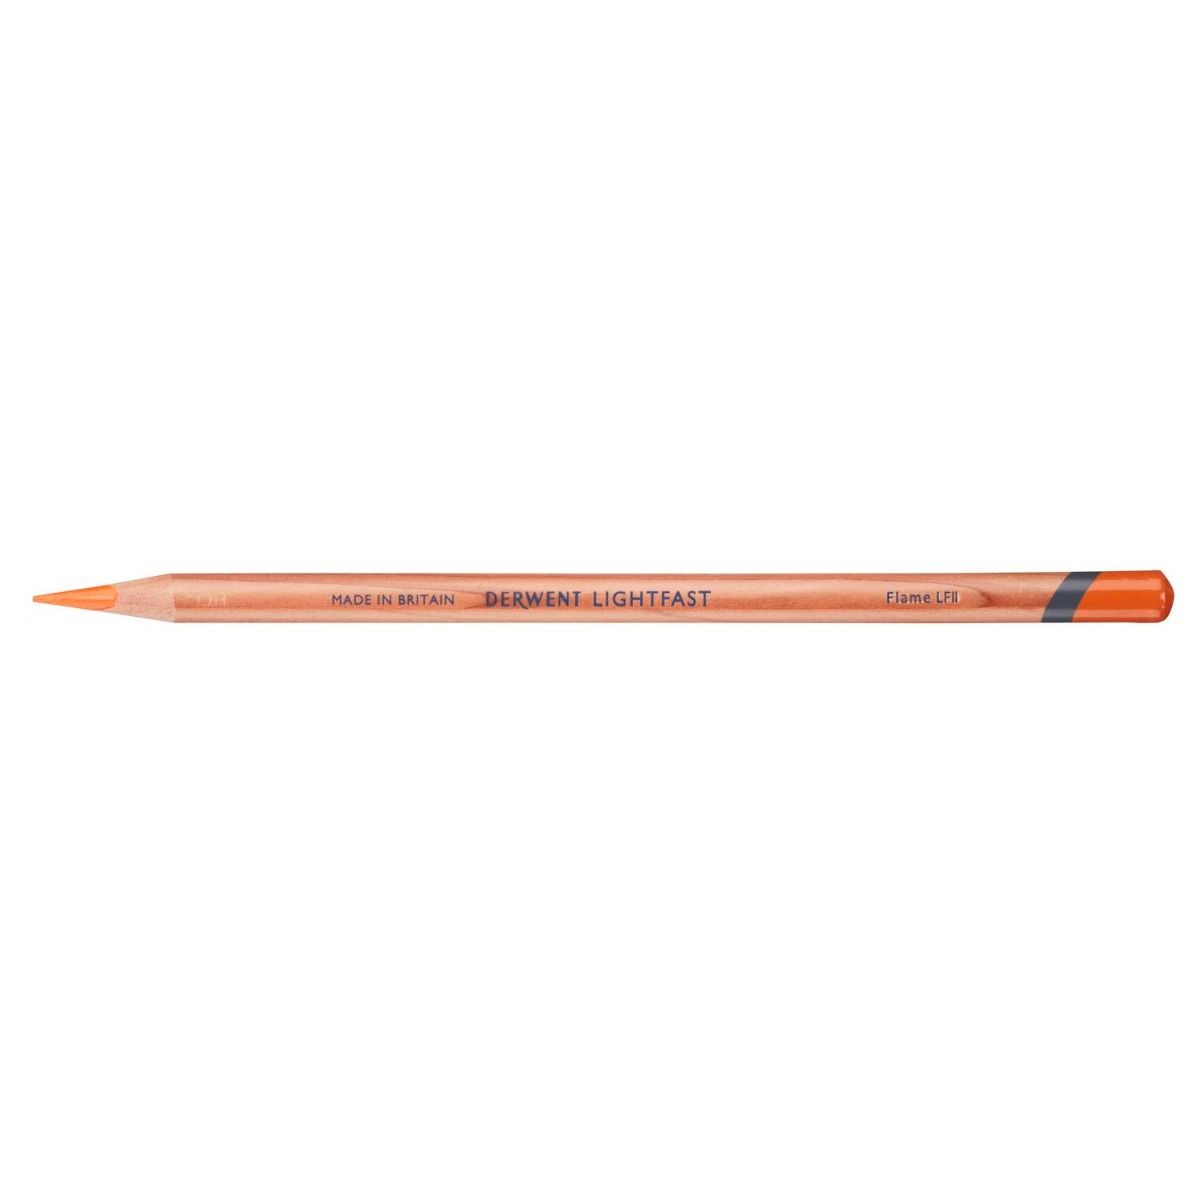 Derwent Lightfast Pencil Colour: Flame